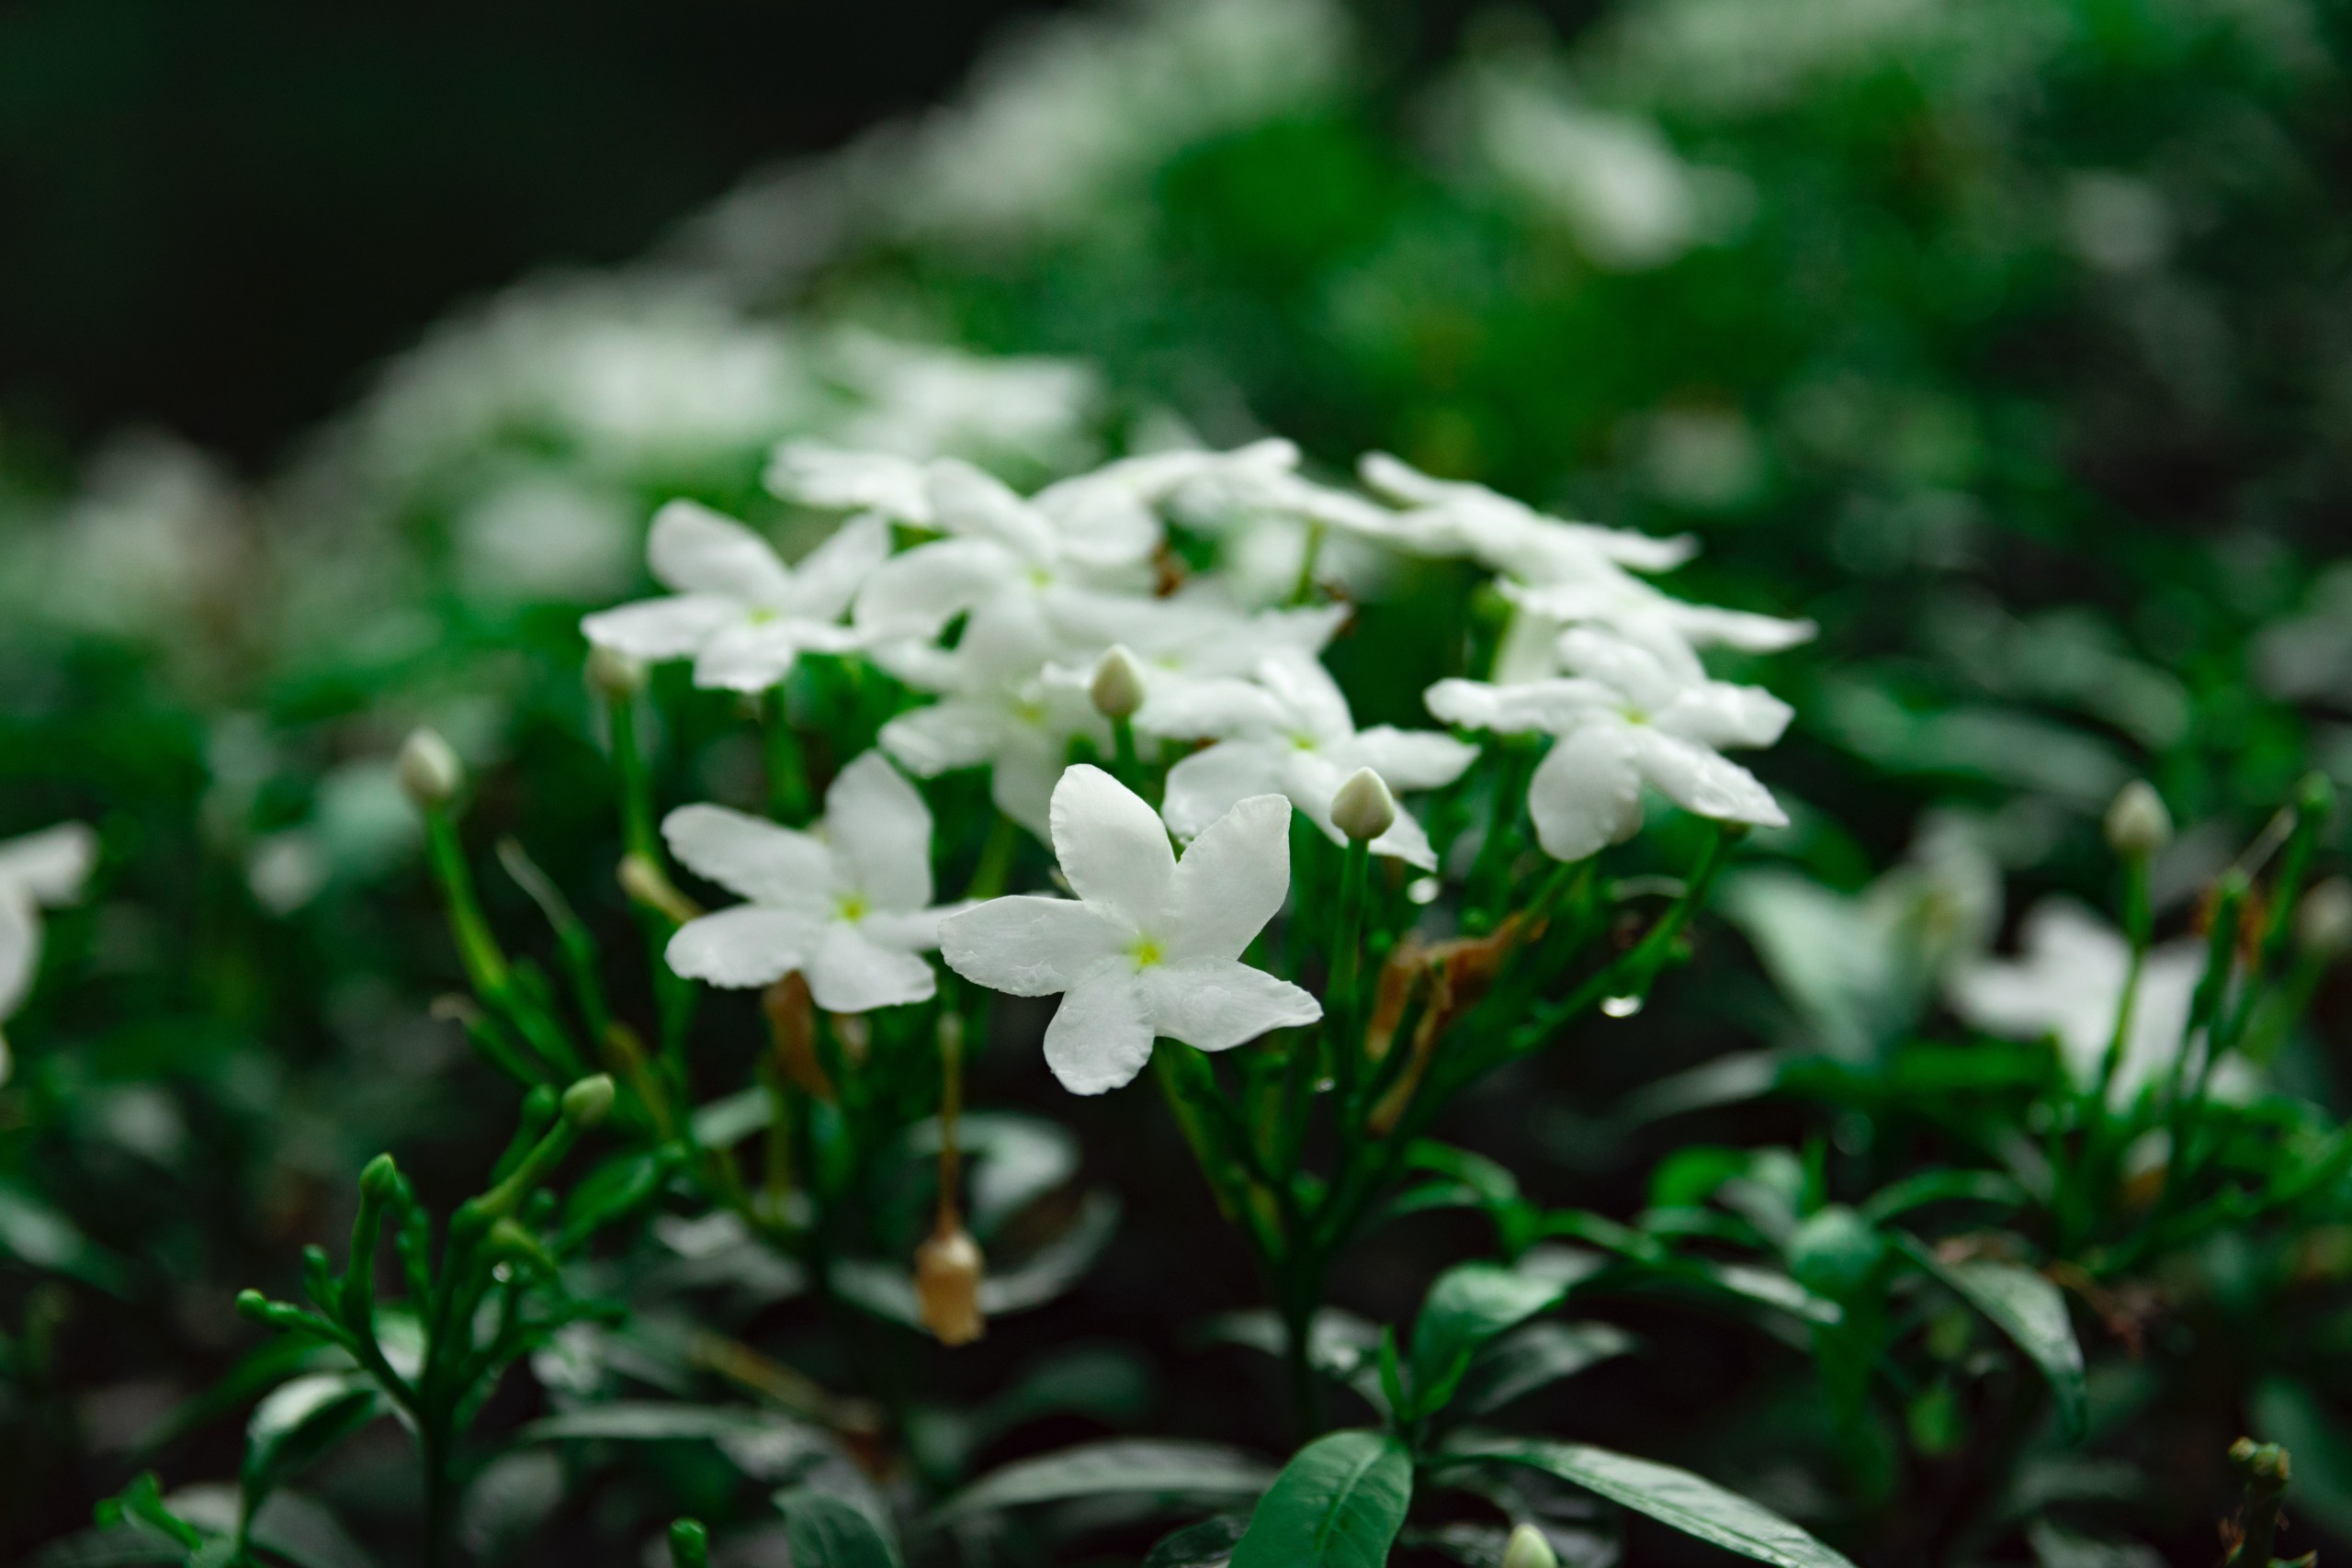 Jasmine cultivation – Profits per acre, Caveats and more